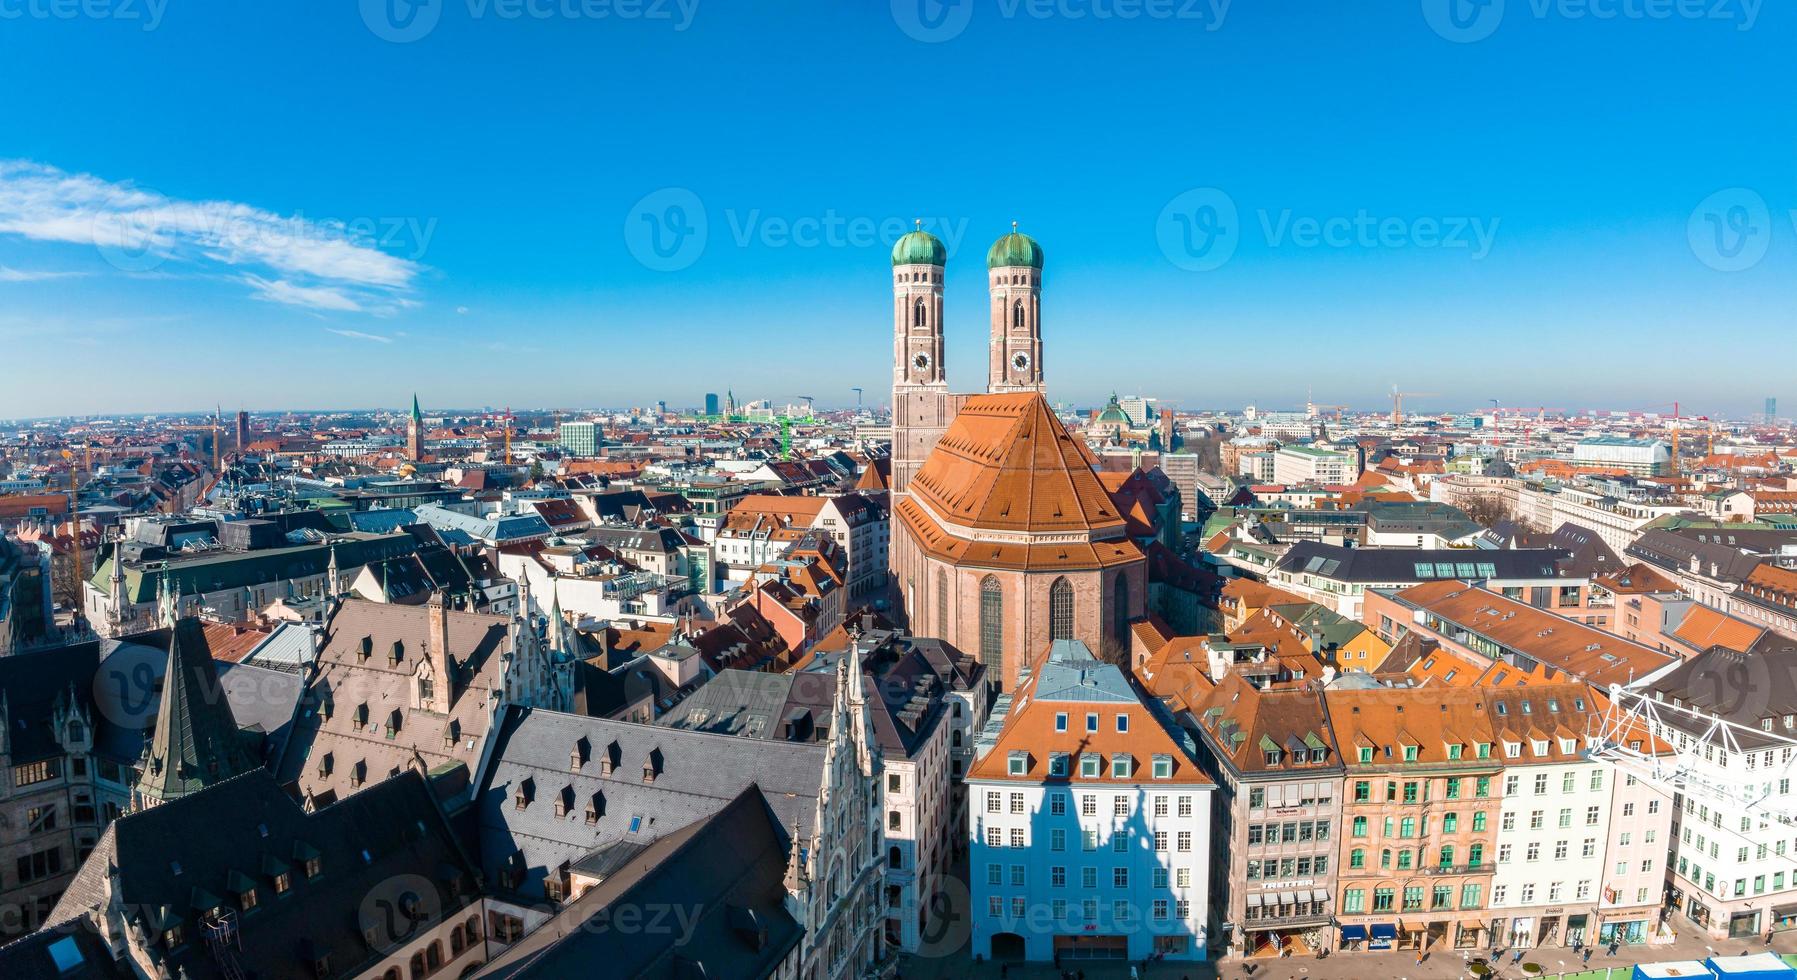 Flygfoto på Marienplatz stadshus och Frauenkirche i München foto